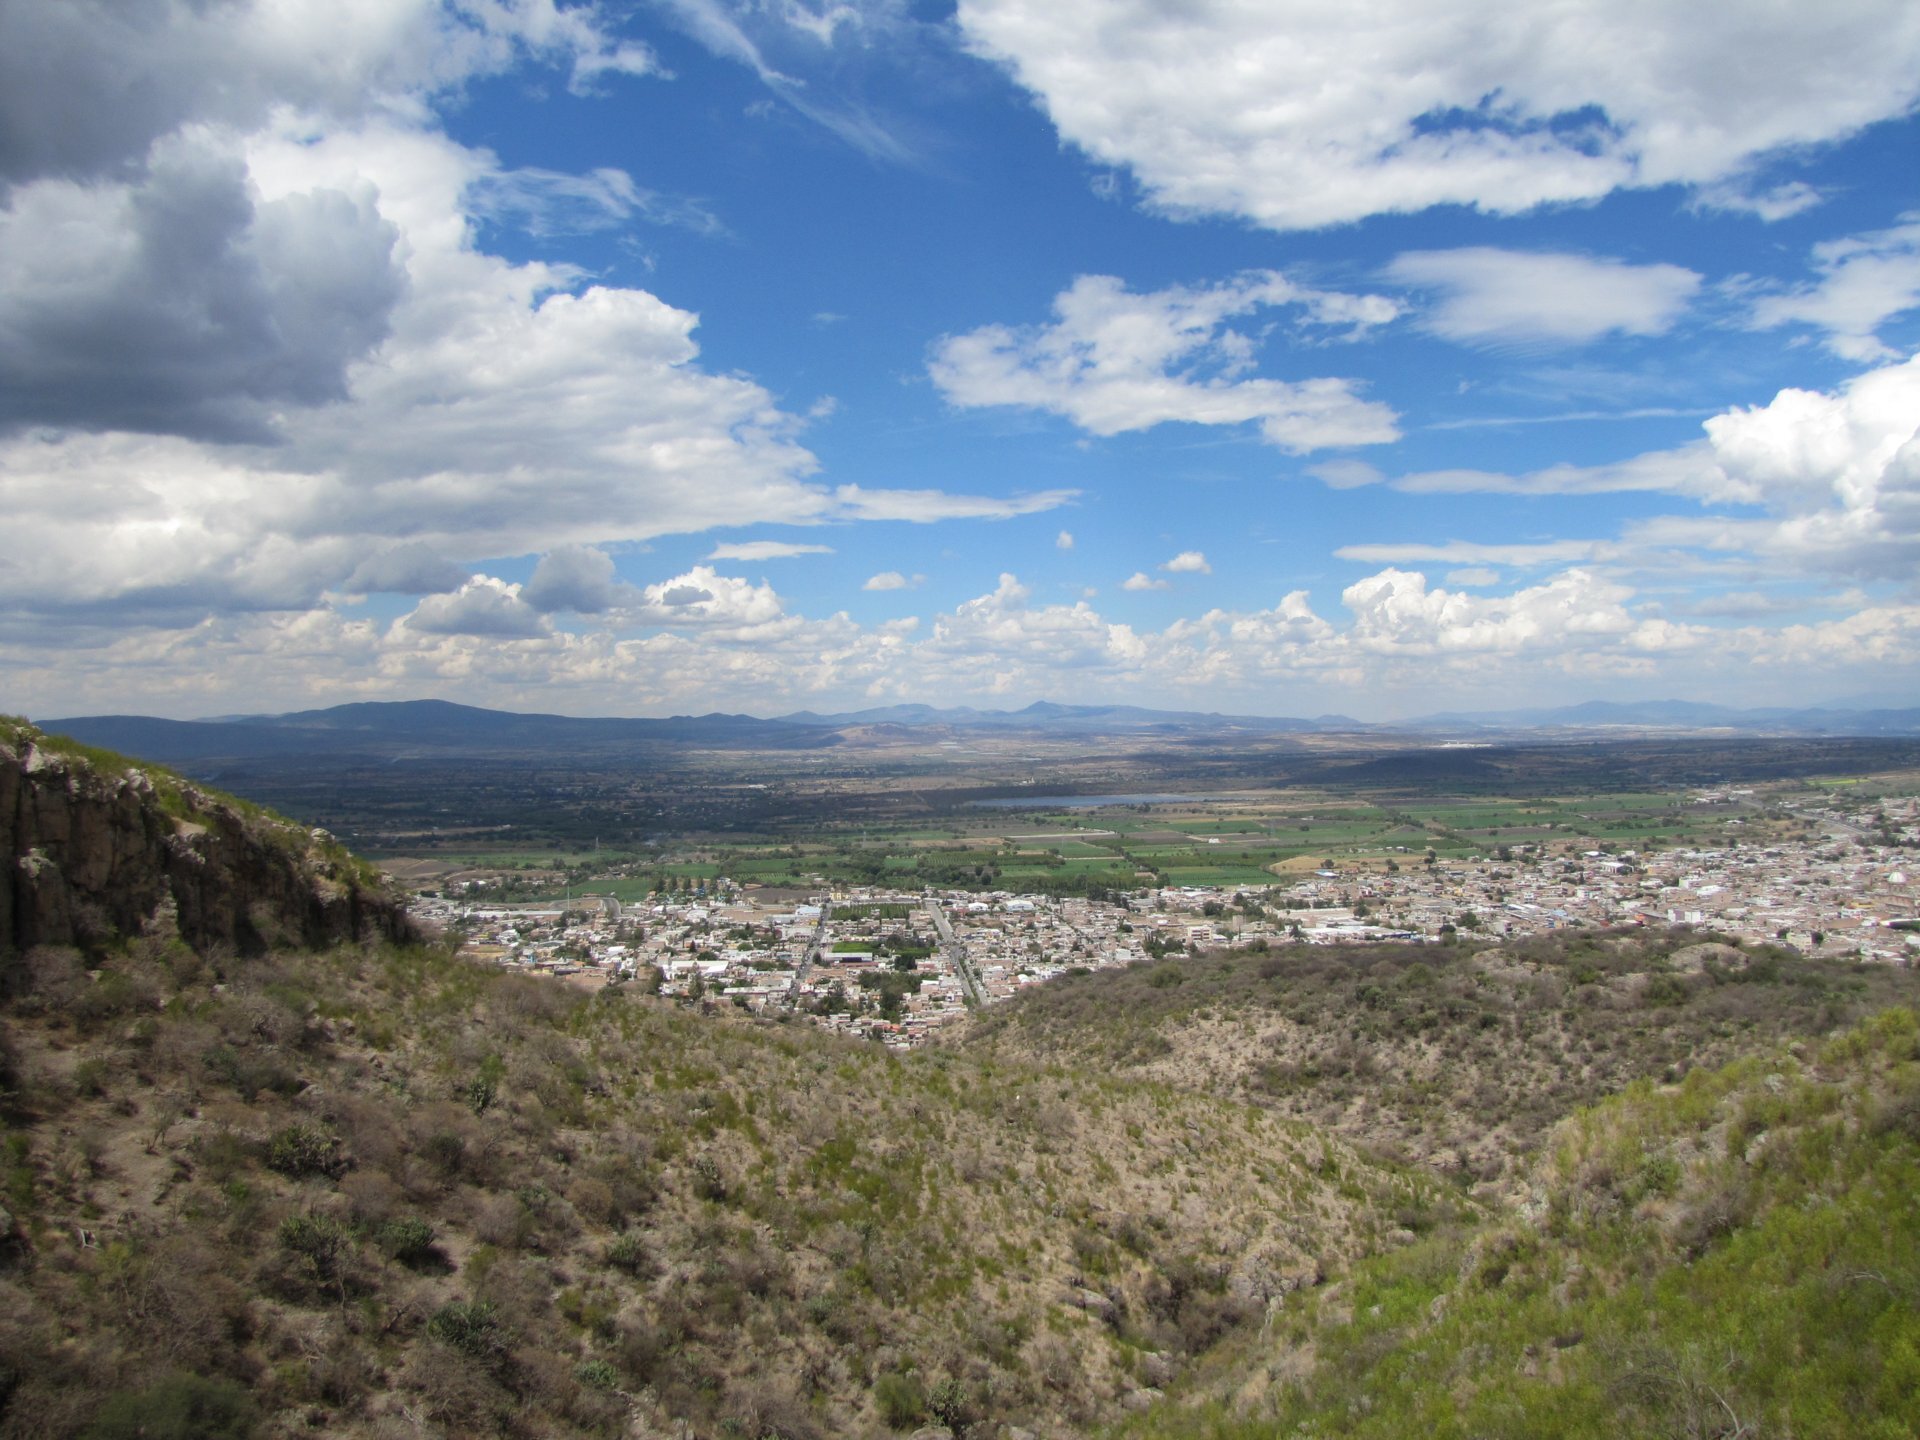 Imagen 1. Cercanía de asentamientos humanos a sitios naturales donde se encuentra la fauna silvestre. Foto de María Eugenia Espinosa Flores, Guanajuato, 2014.